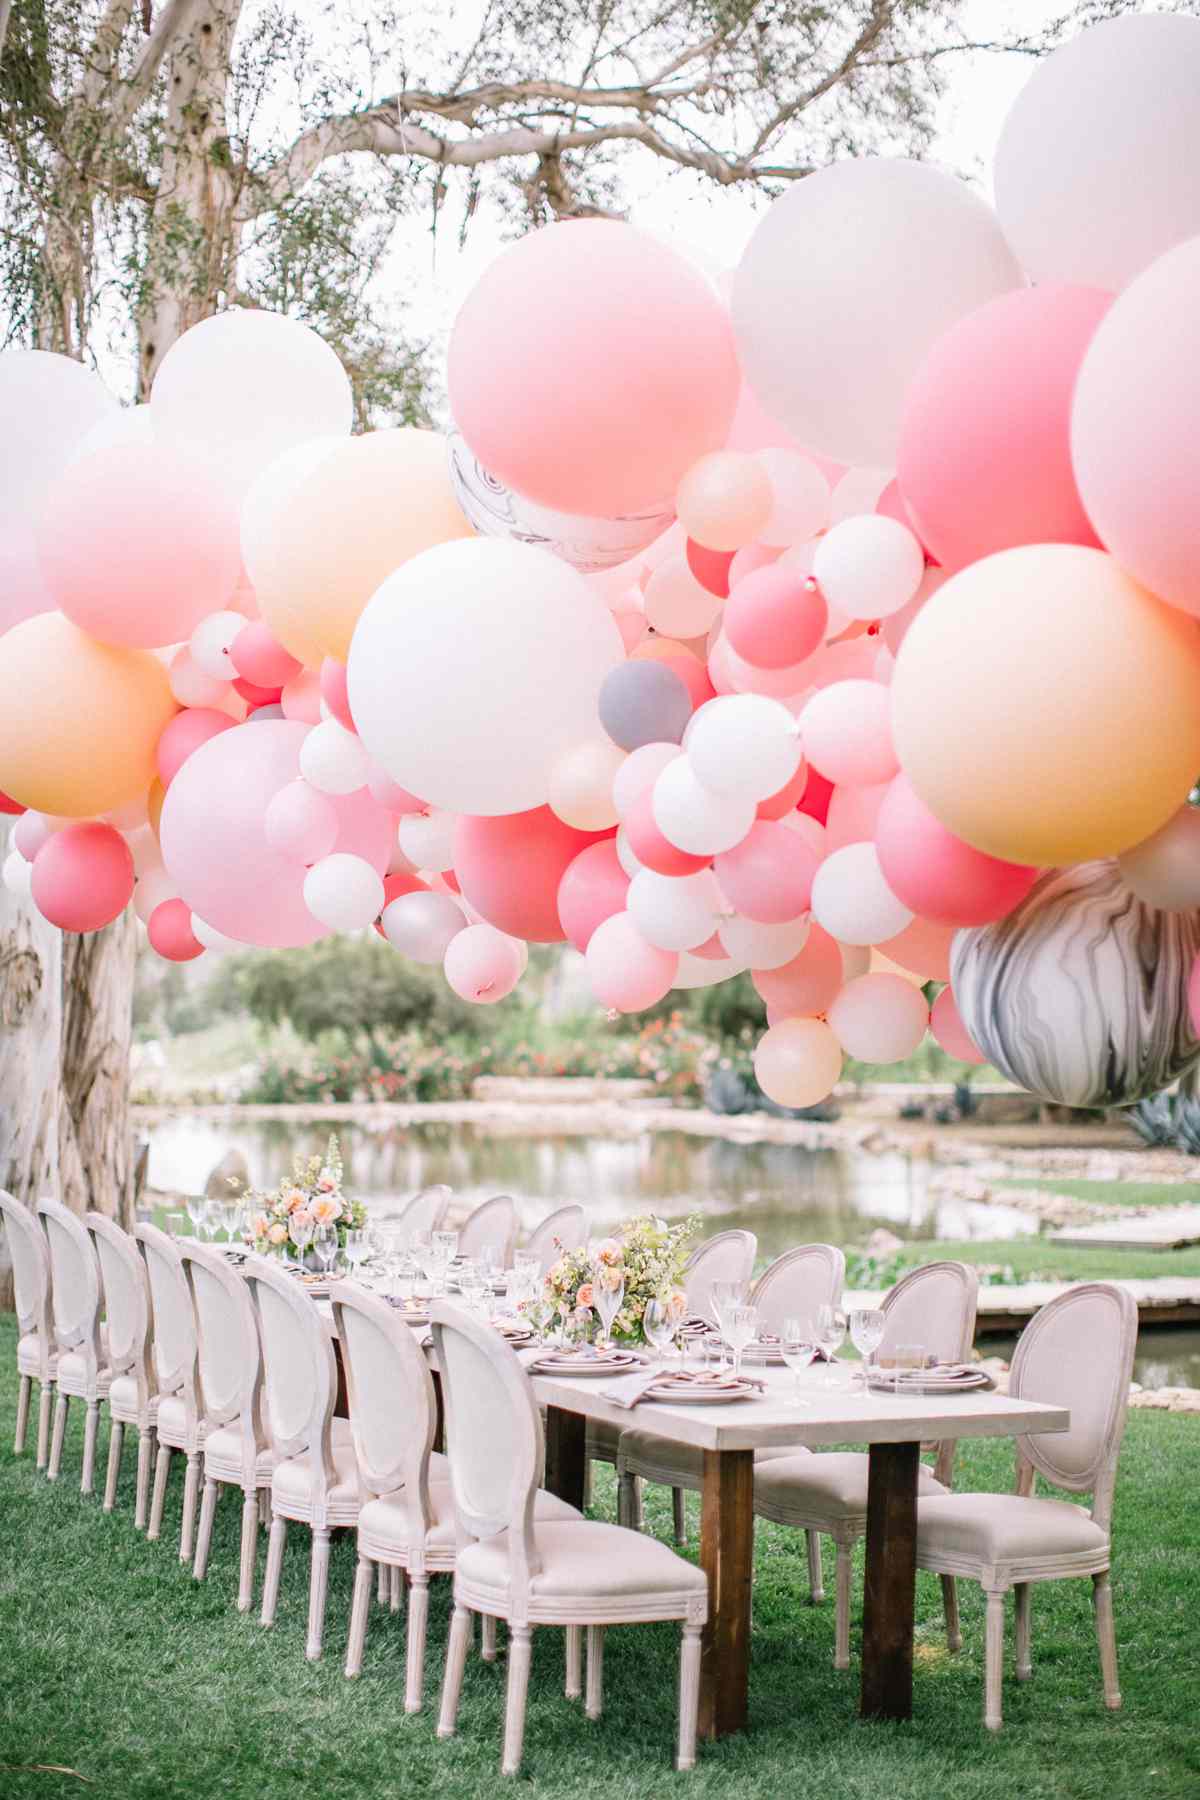 Balloon Wedding Centerpieces